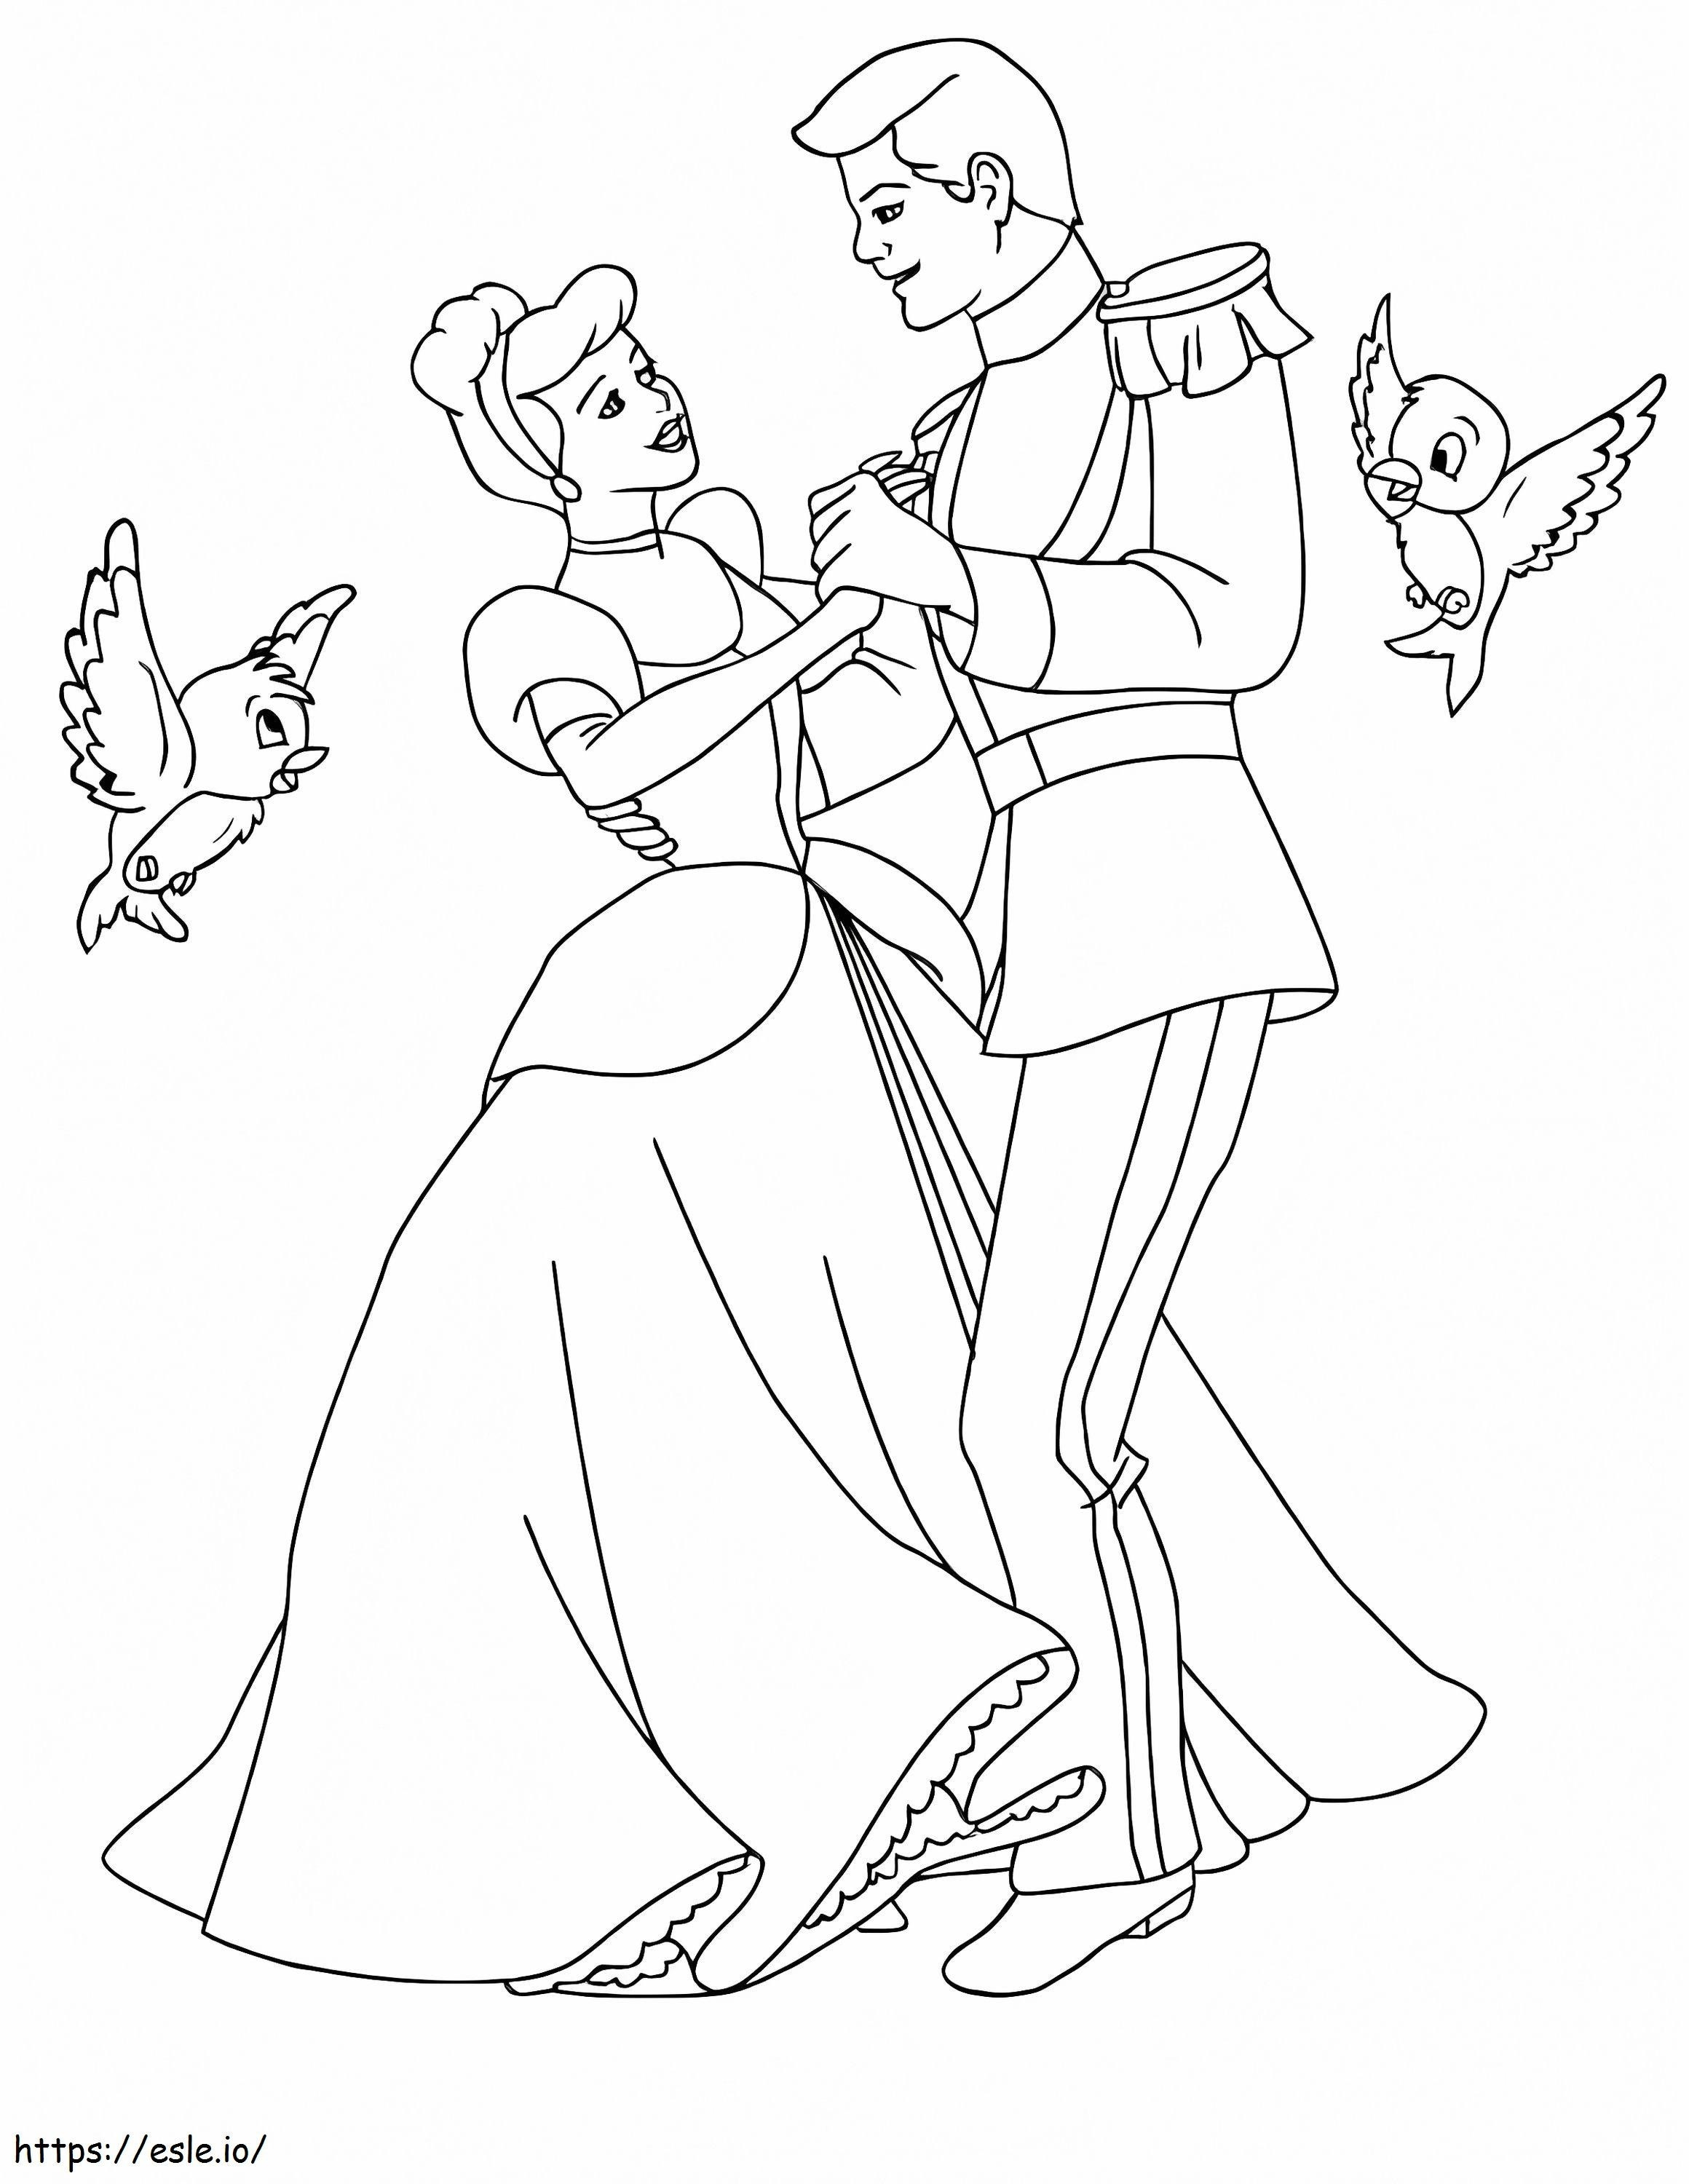 Cenușăreasa și prințul dansând cu două păsări de colorat